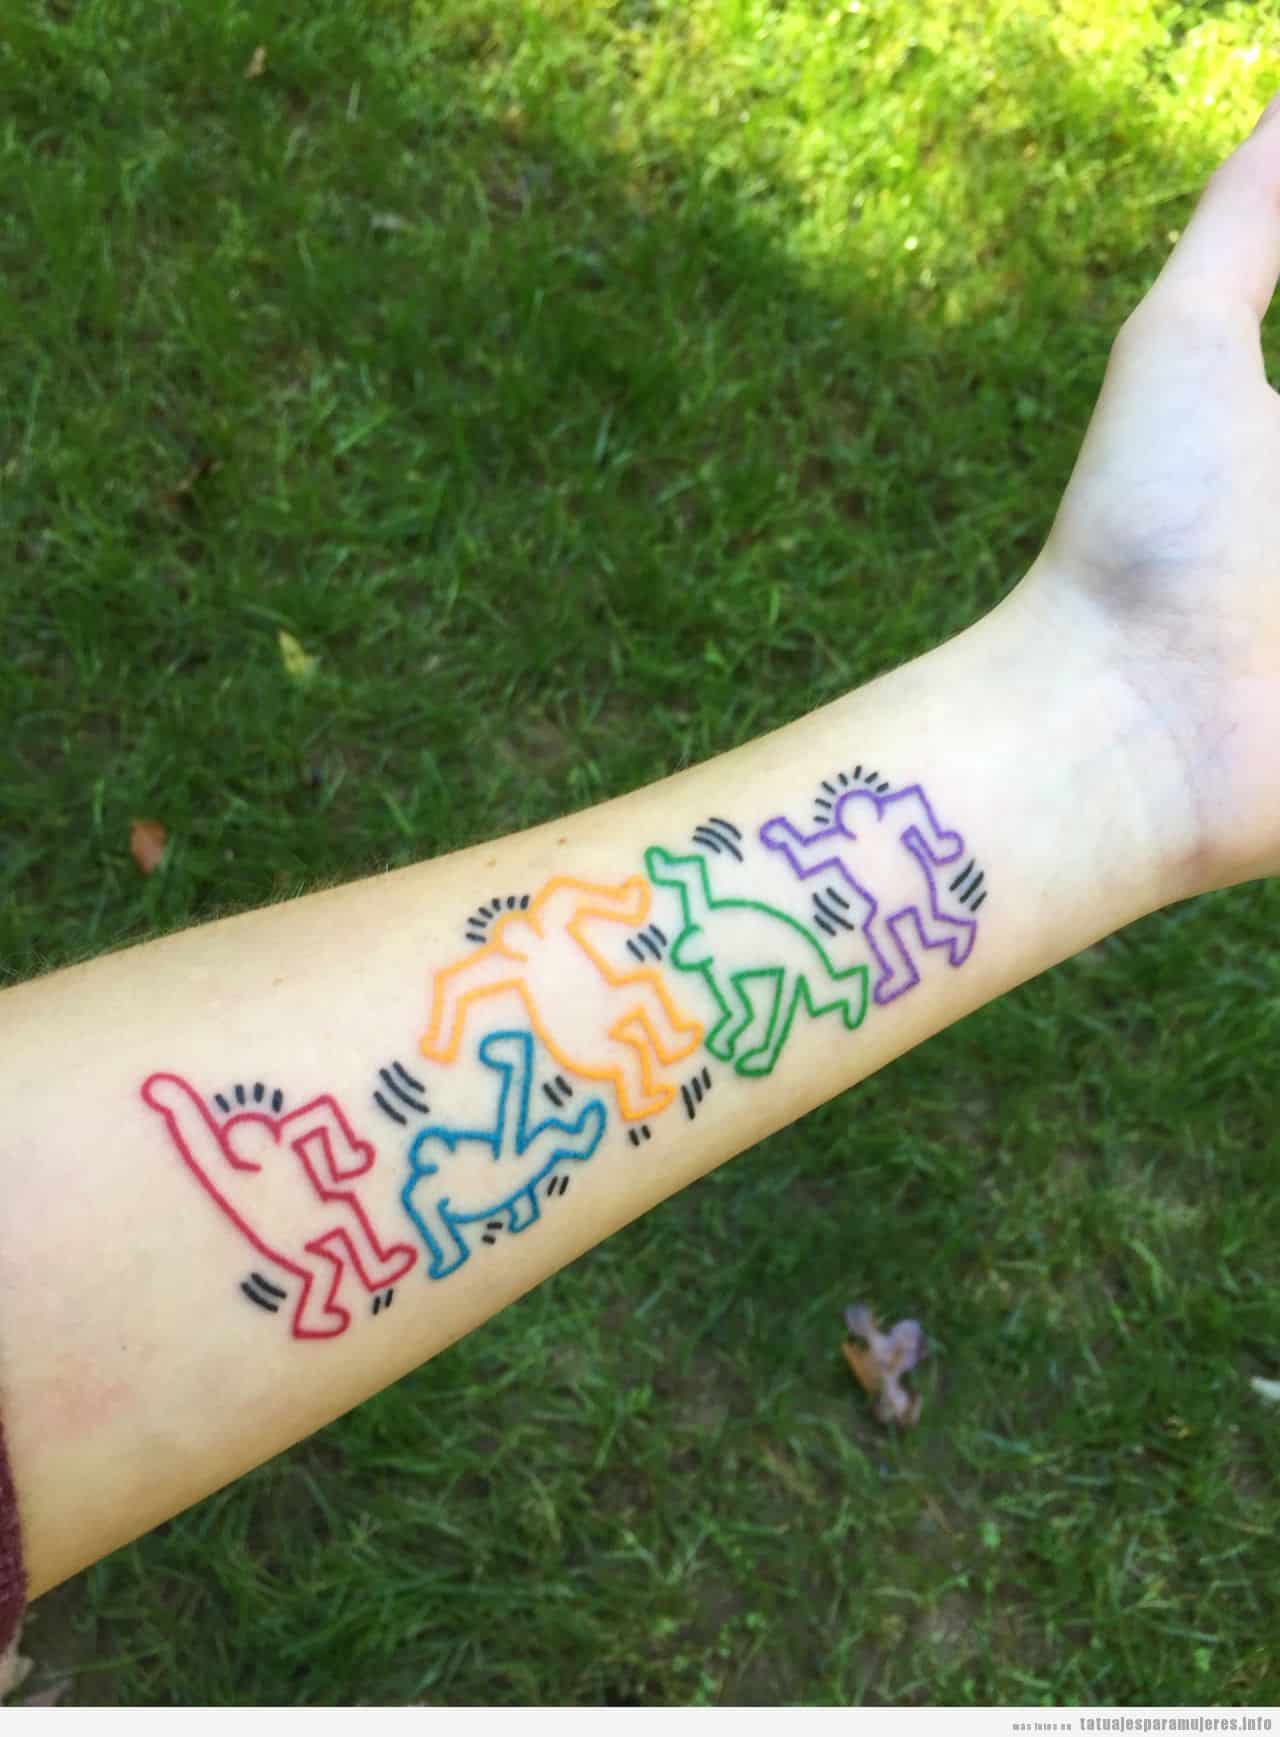 Tatuaje inspirado en obra de artr de Keith Haring